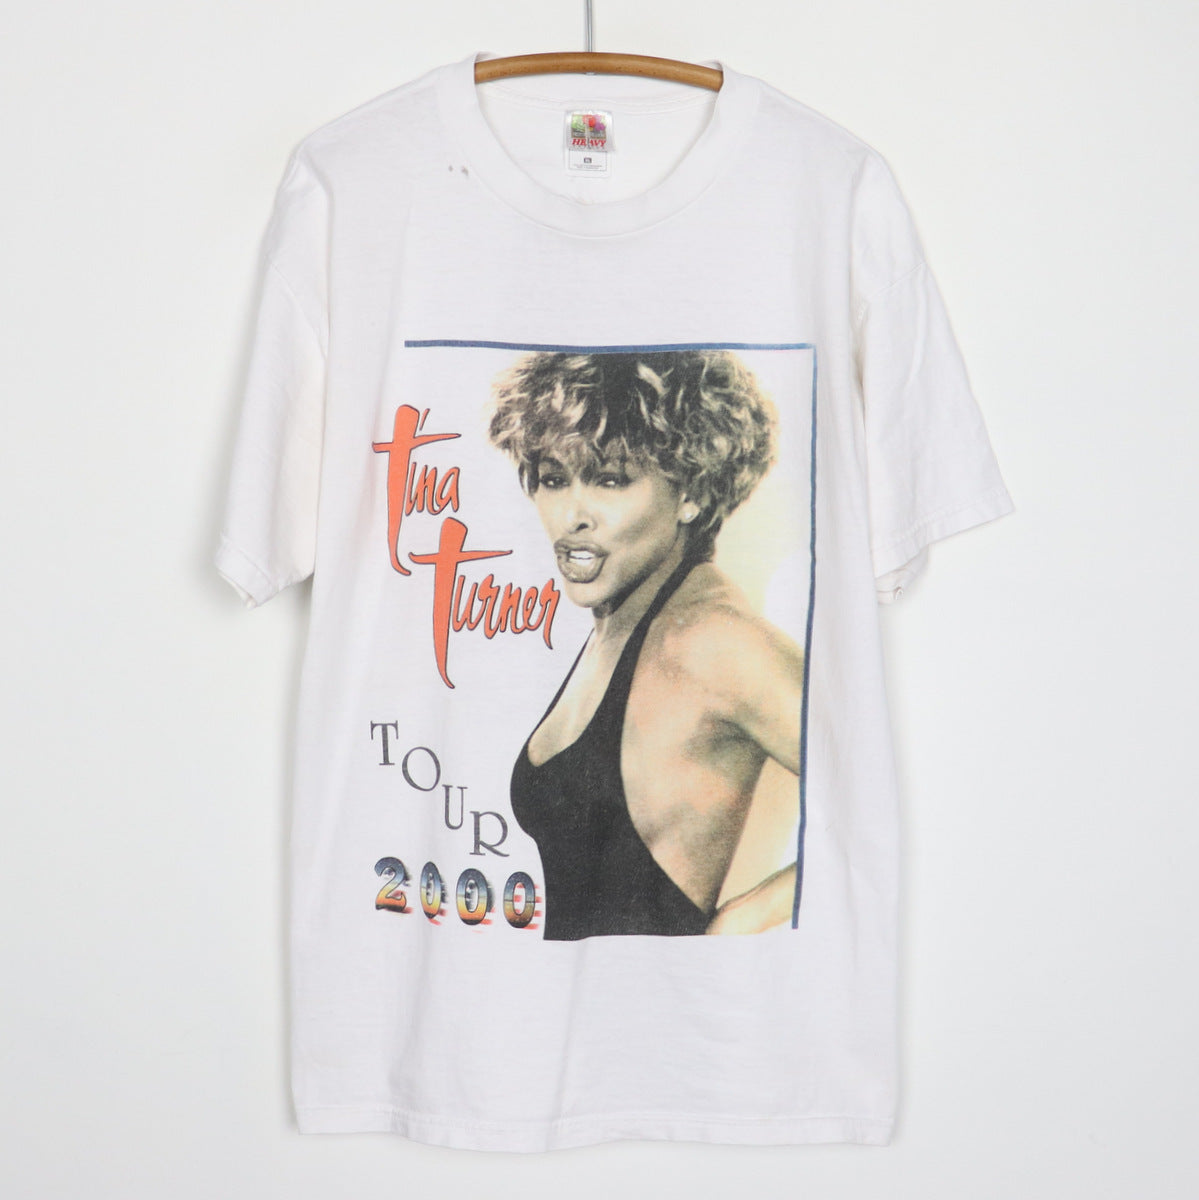 2000 Tina Turner Tour Shirt